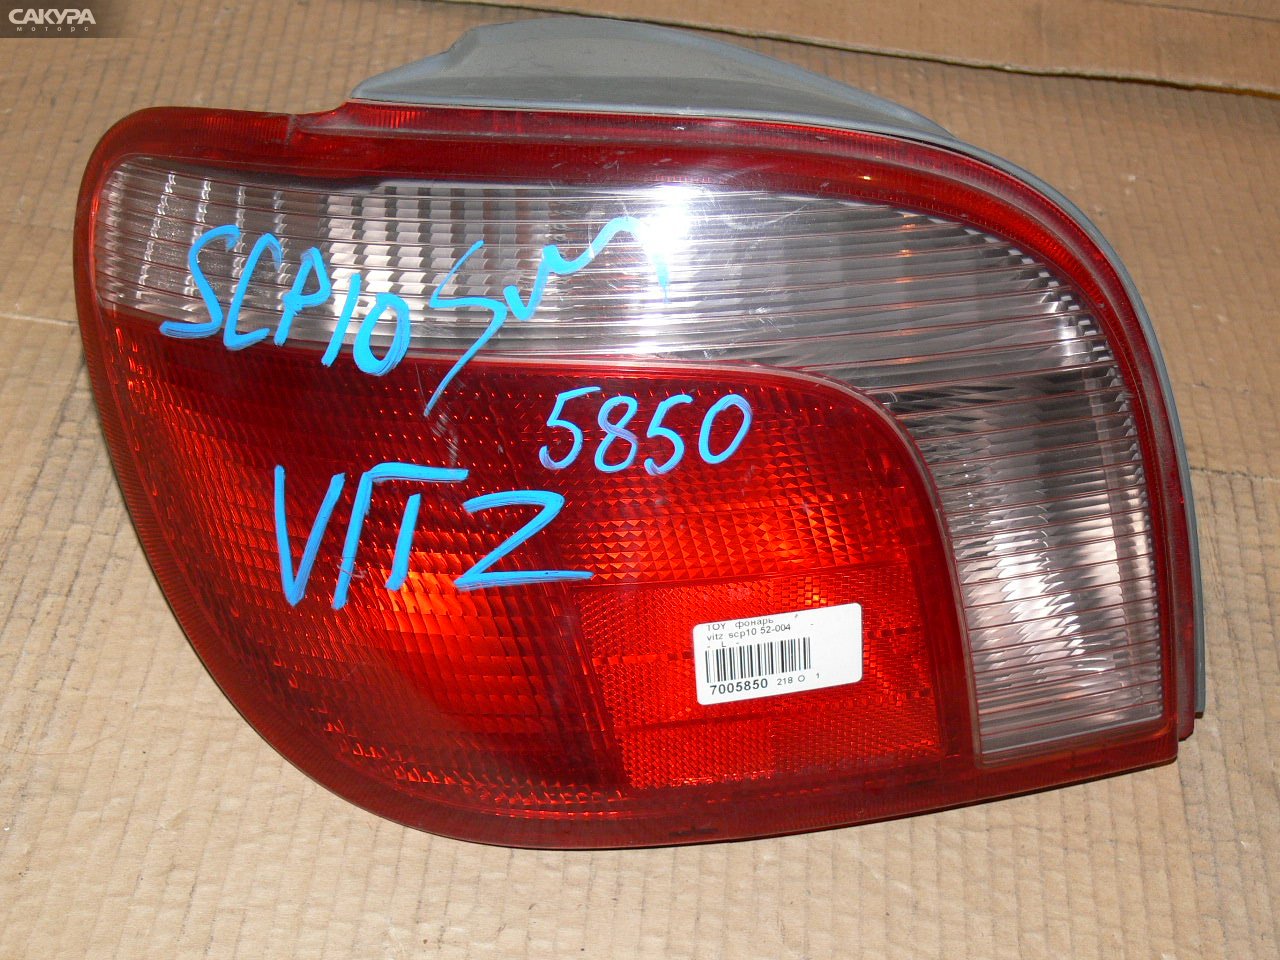 Фонарь стоп-сигнала левый Toyota Vitz SCP10 52-004: купить в Сакура Иркутск.